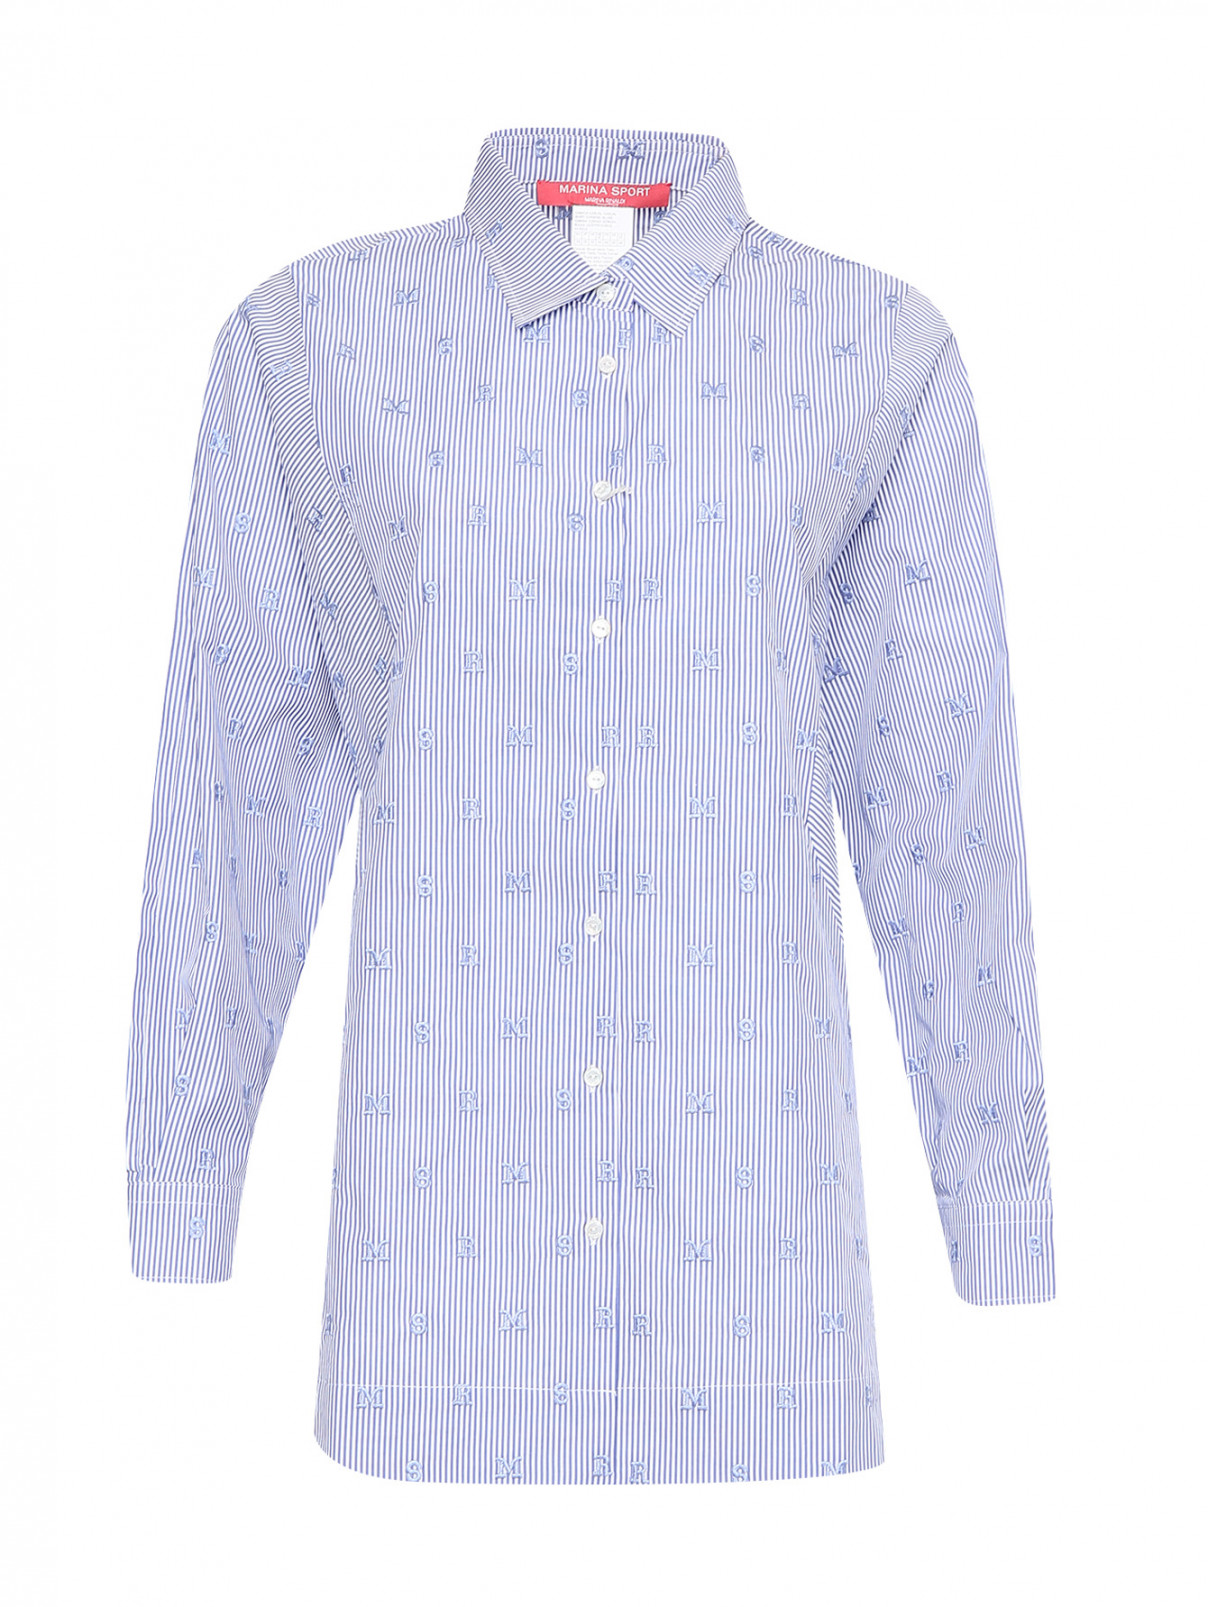 Рубашка из хлопка с узором и вышивкой Marina Rinaldi  –  Общий вид  – Цвет:  Синий